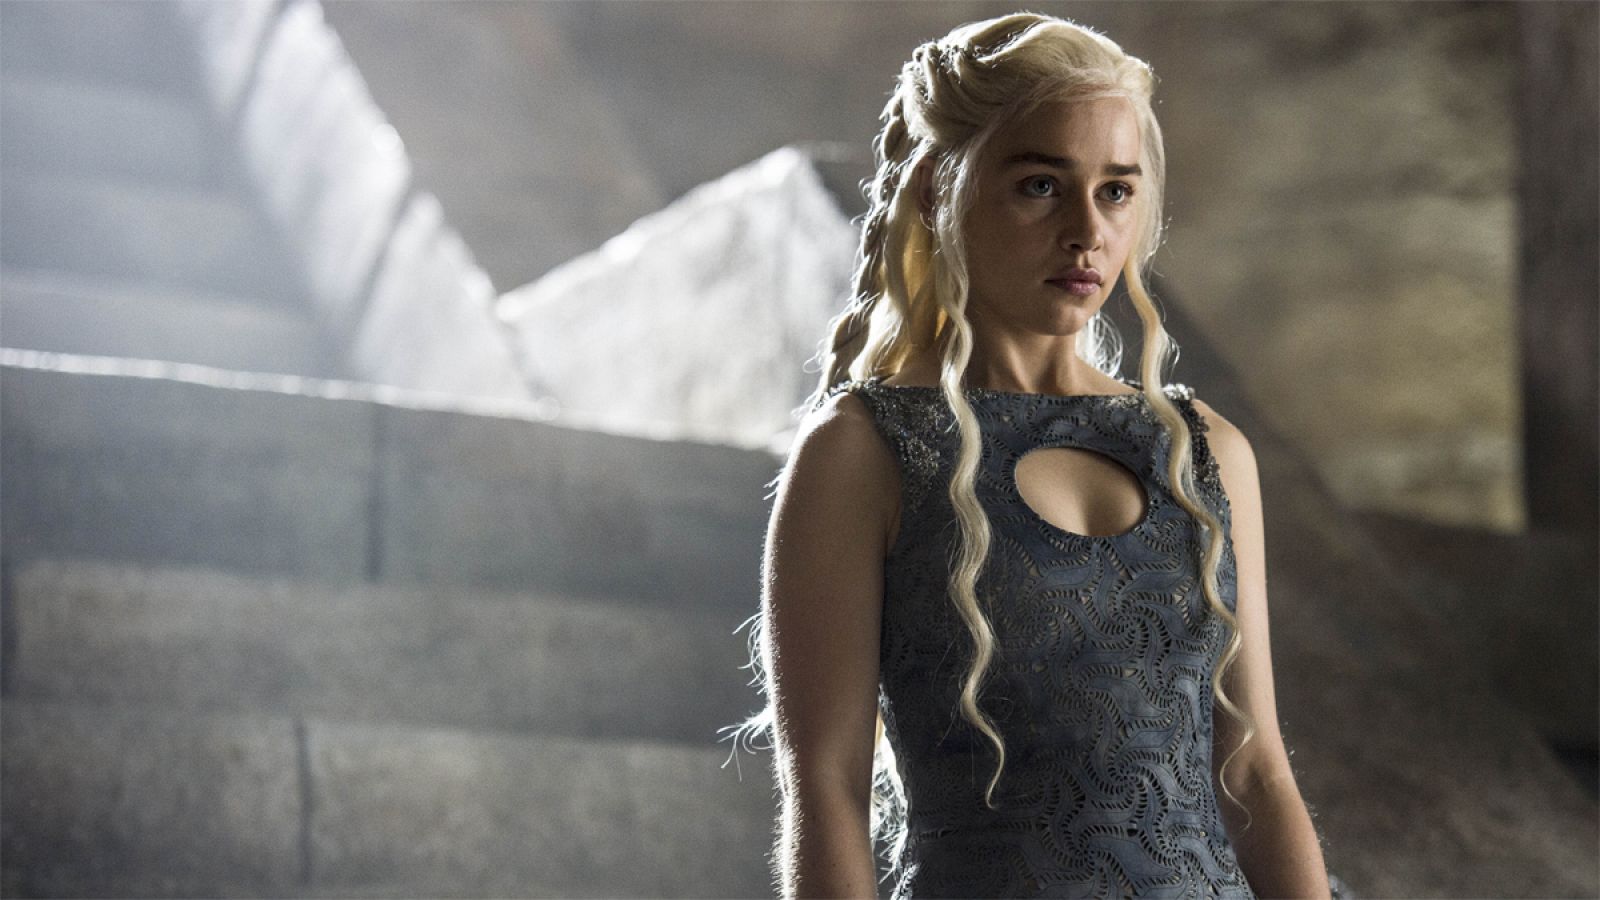 Fotograma que muestra a Daenerys Targaryen, personaje de la serie Juego de Tronos